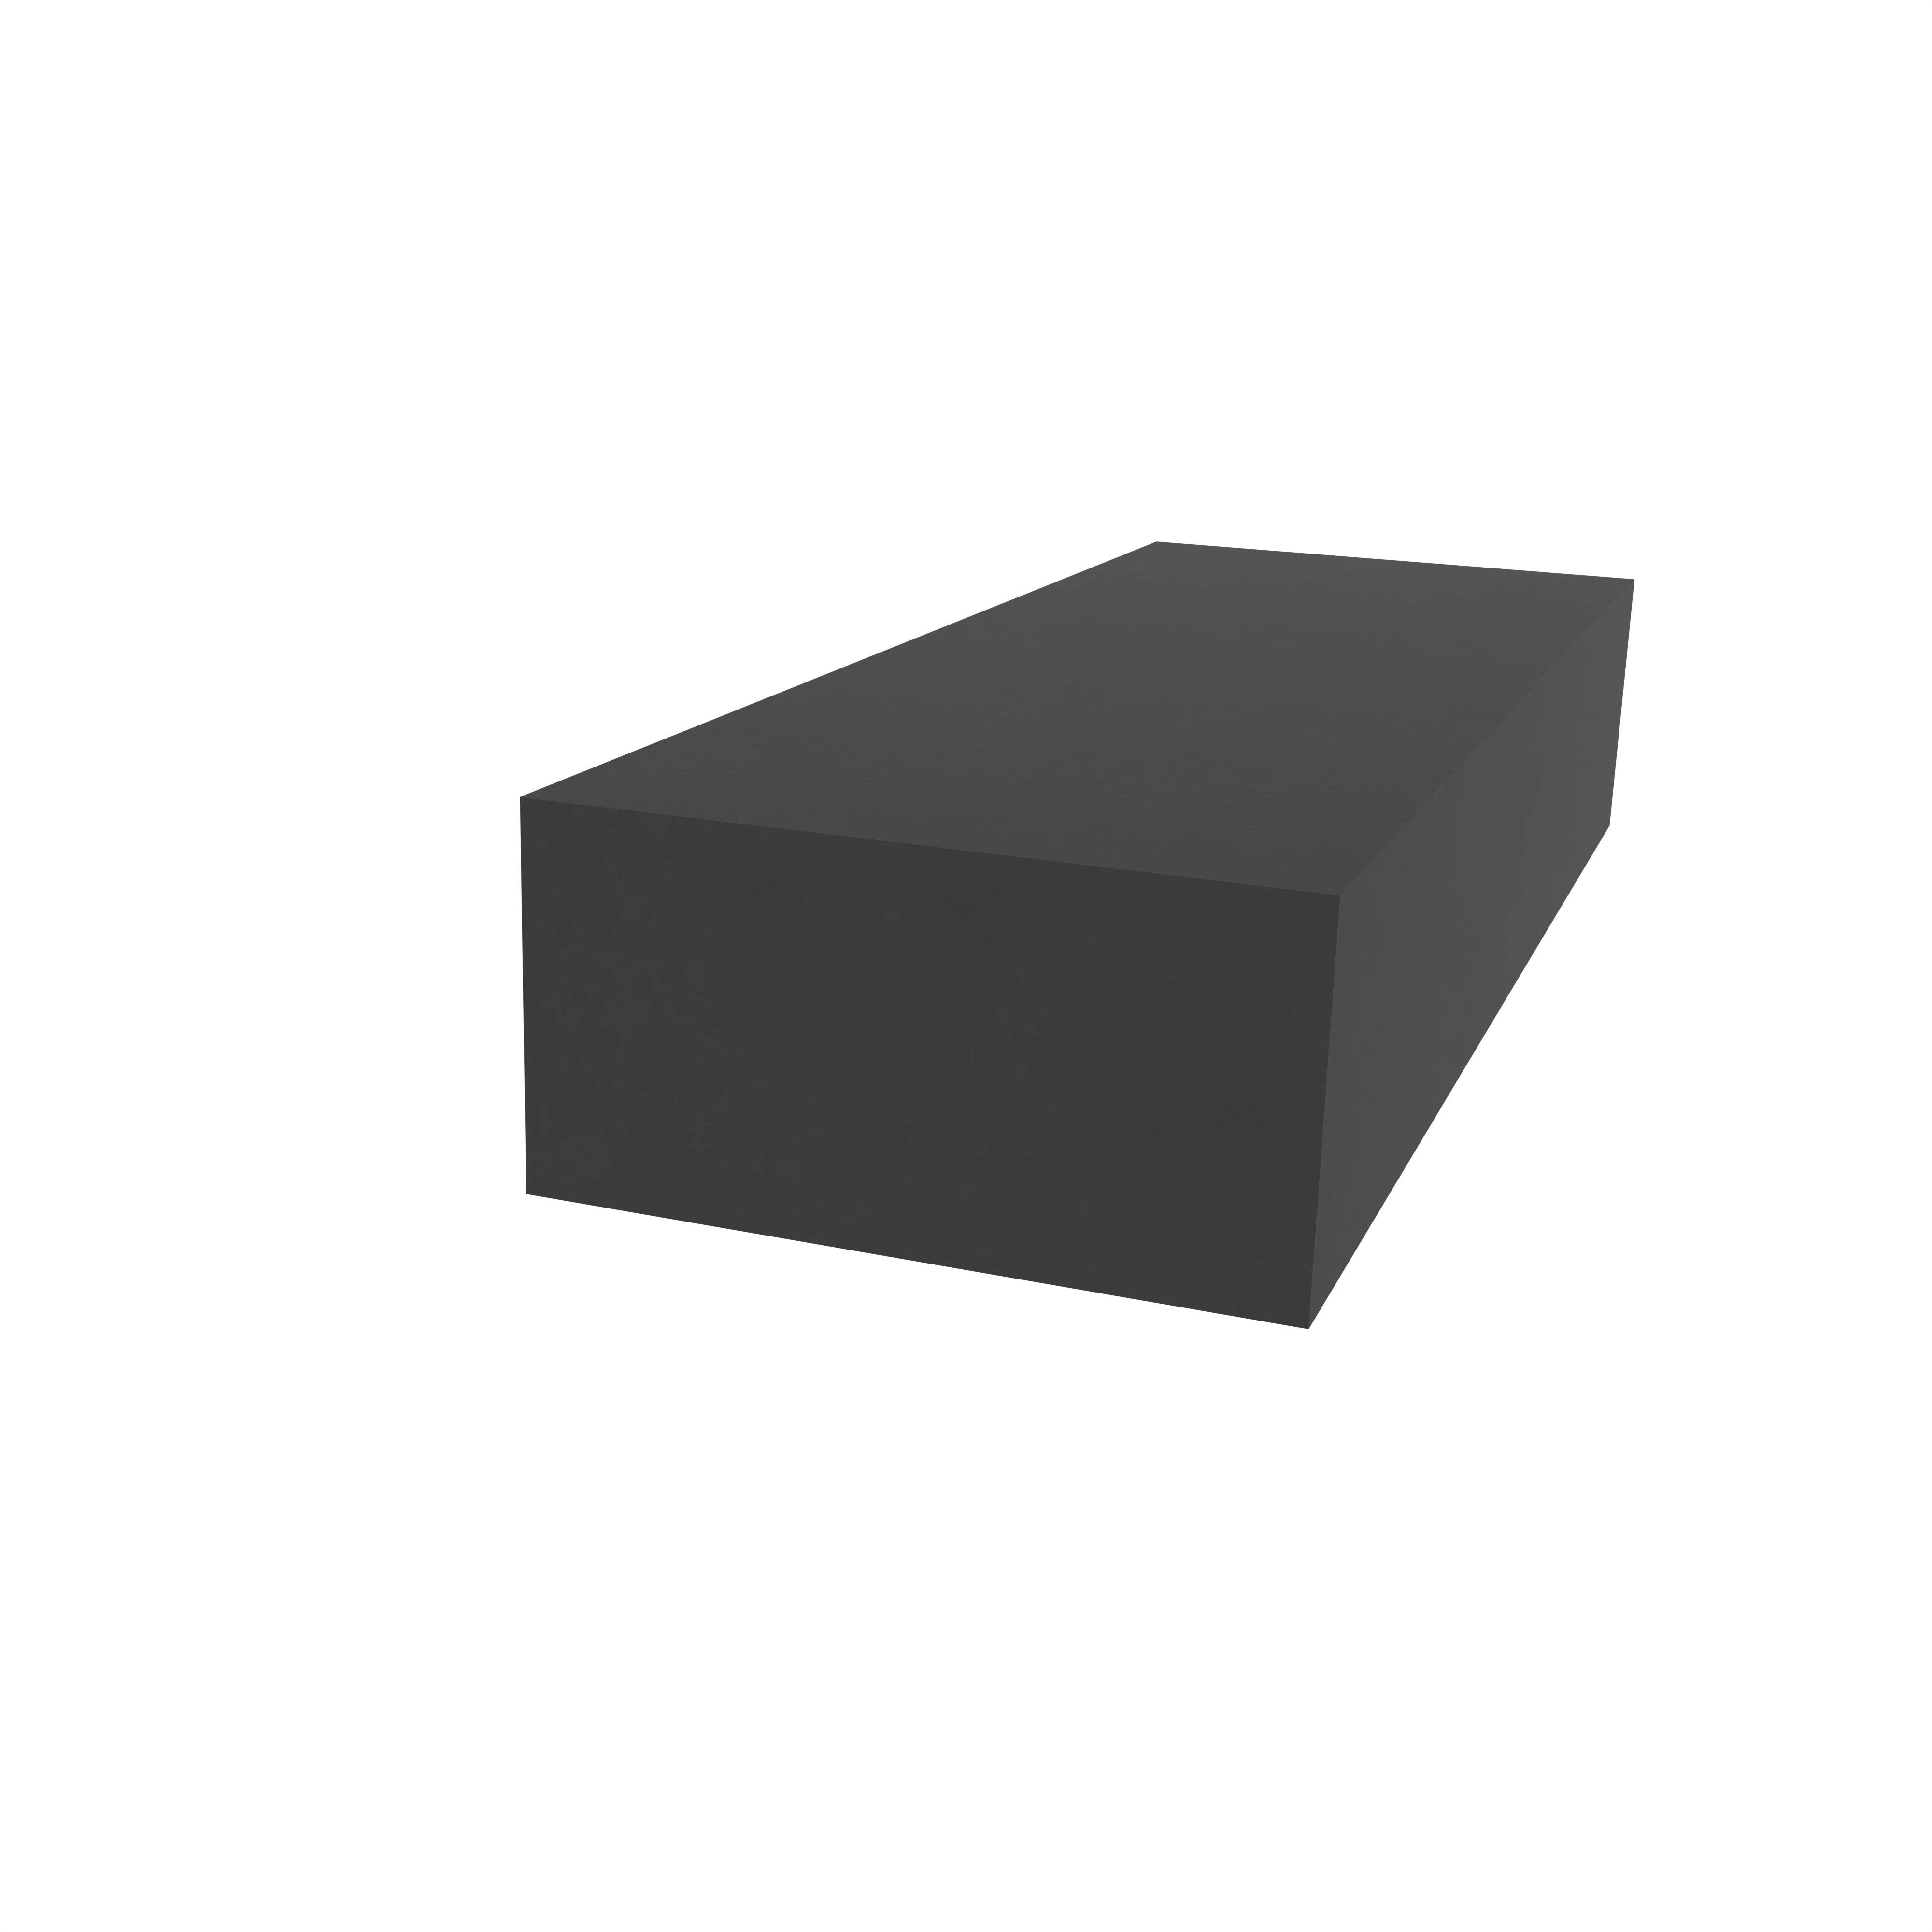 Moosgummidichtung vierkant | 10 mm Breite | Farbe: schwarz